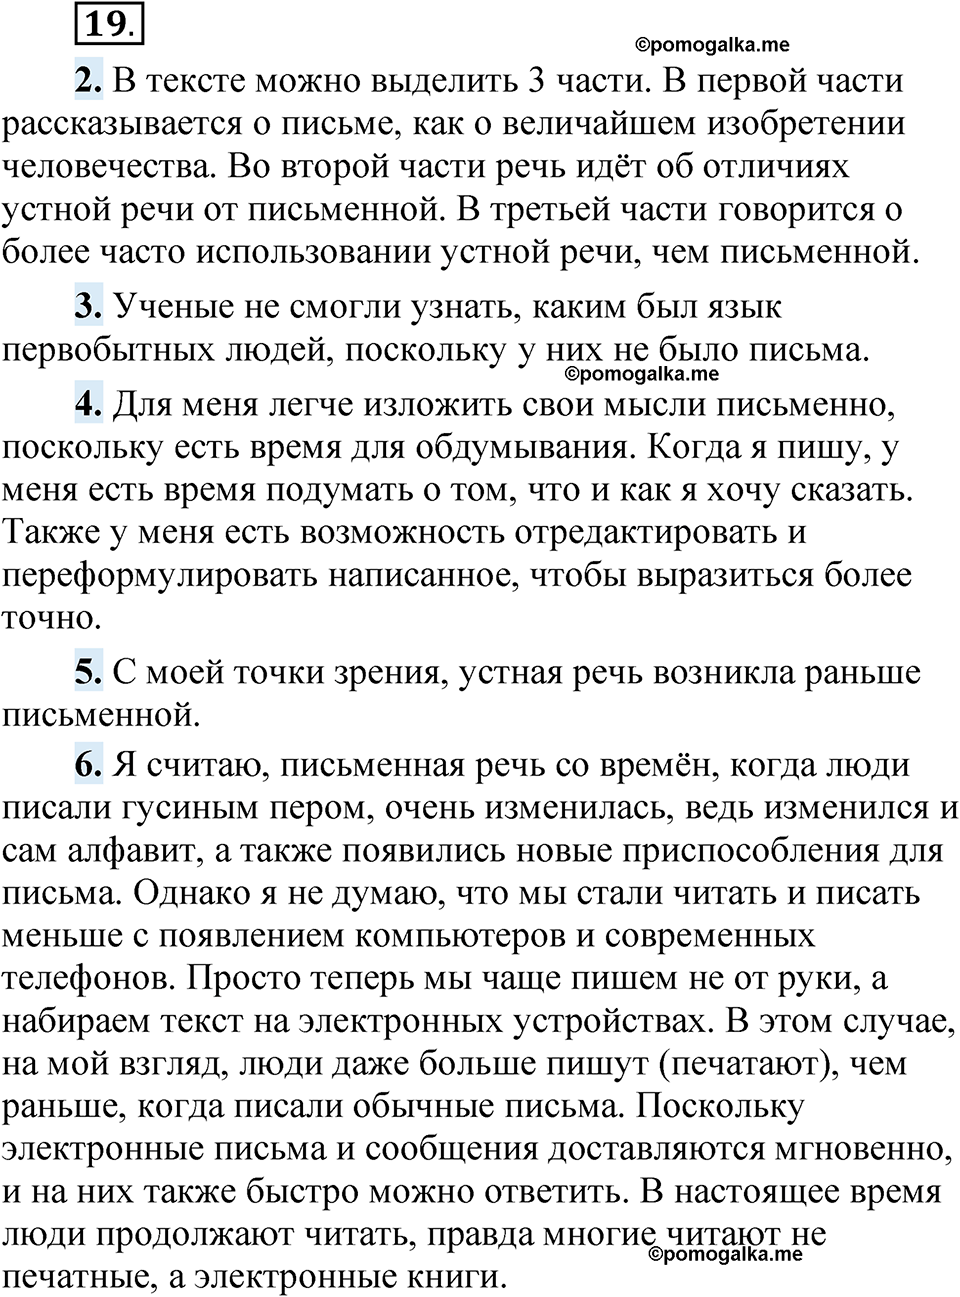 страница 18 упражнение 19 русский язык 5 класс Быстрова, Кибирева 1 часть 2021 год